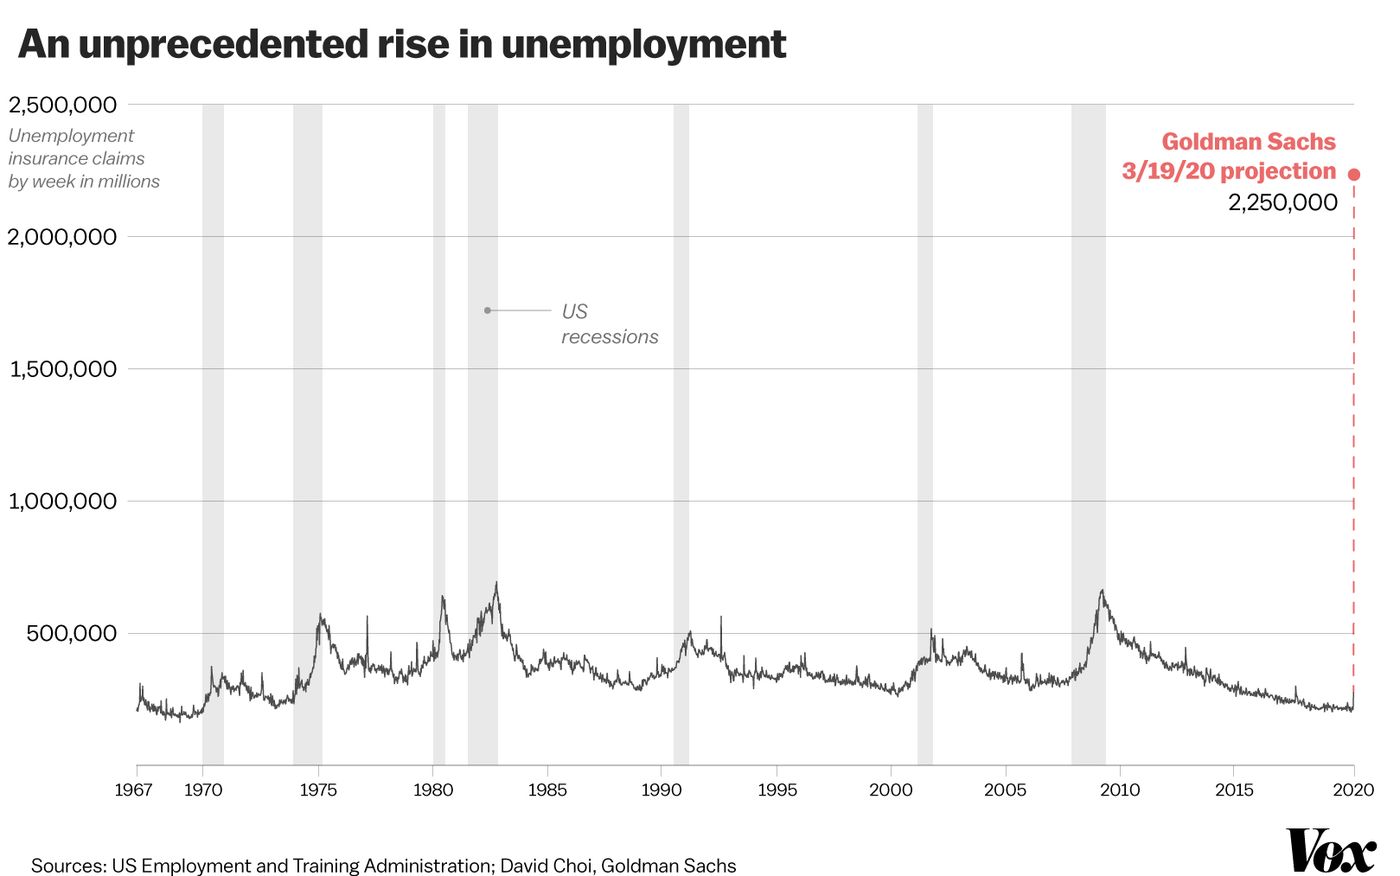 Goldman Sachs Unemployment Estimates